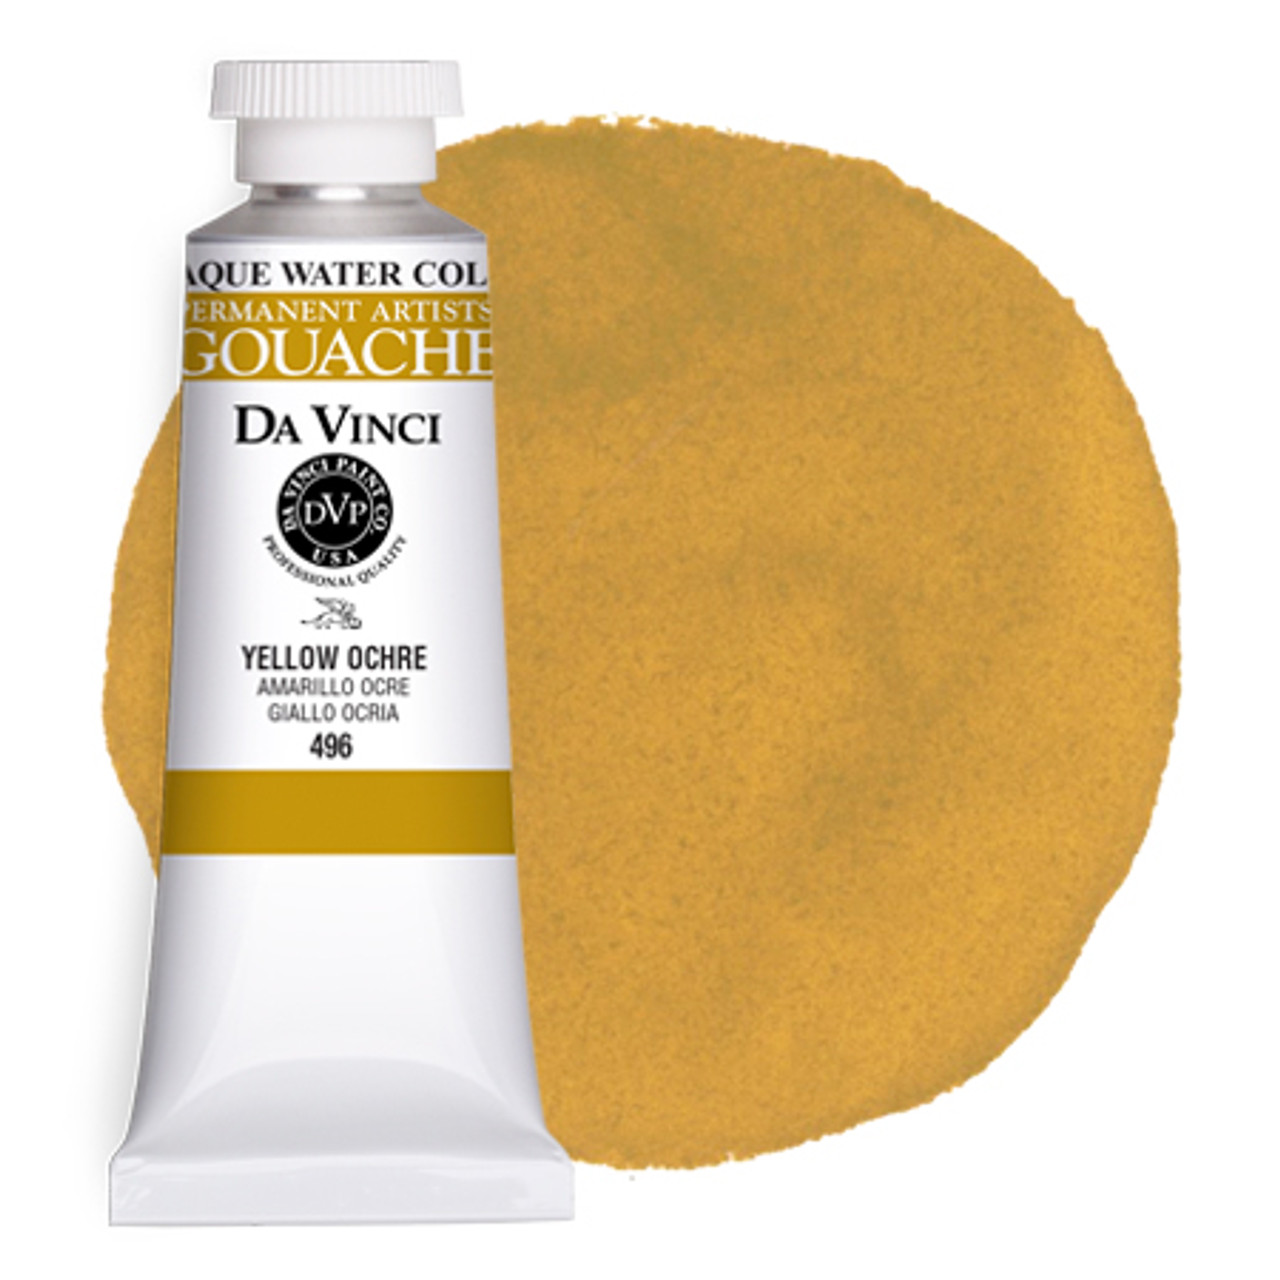 Da Vinci Yellow Ochre Artist Oil Paint - 37mL